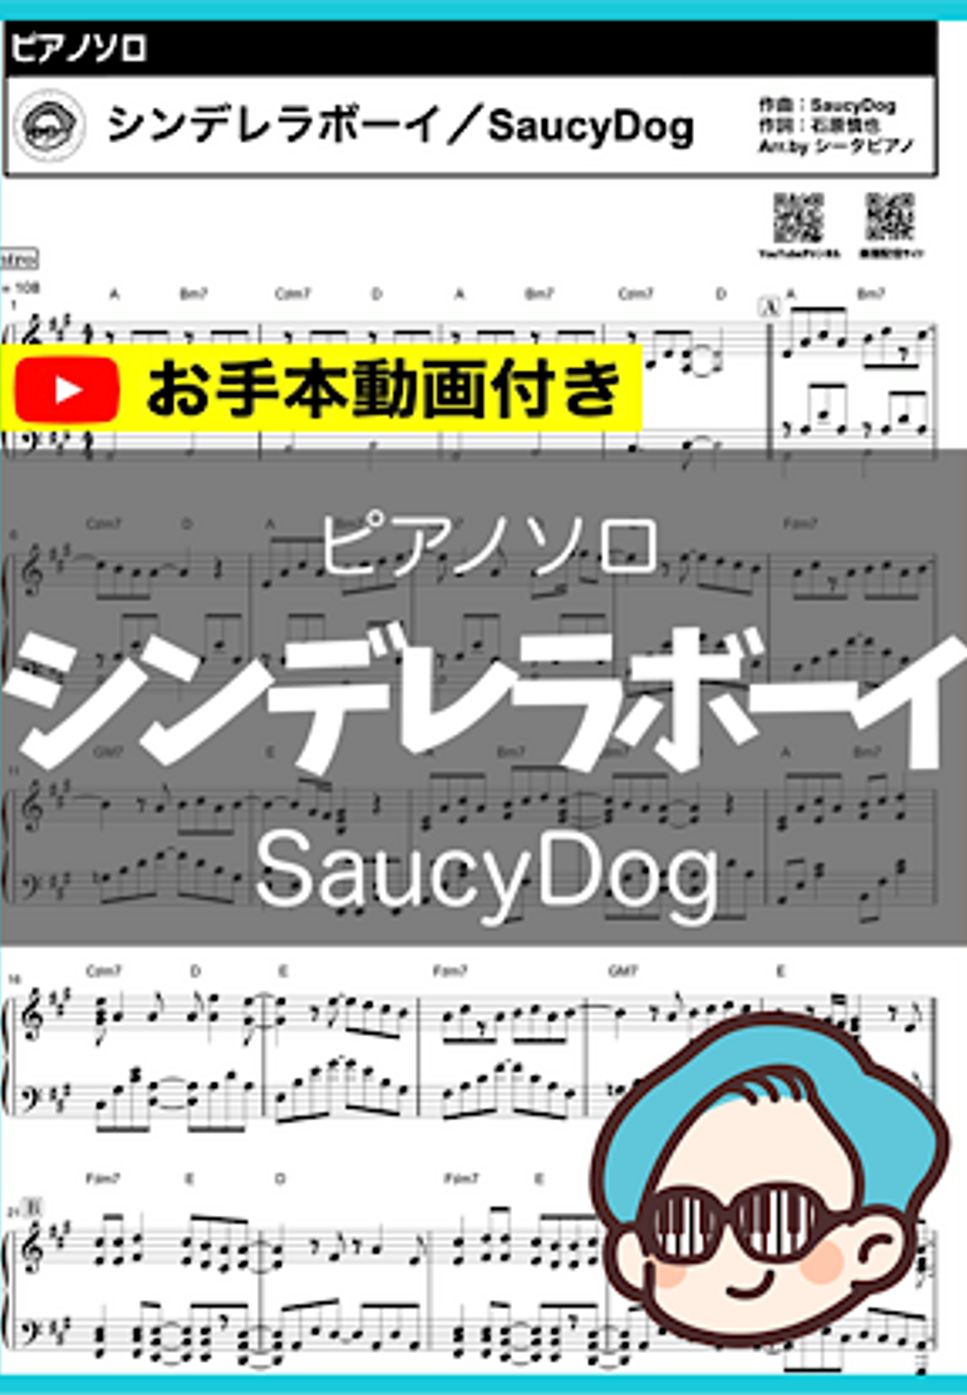 Saucy Dog - シンデレラボーイ by シータピアノ